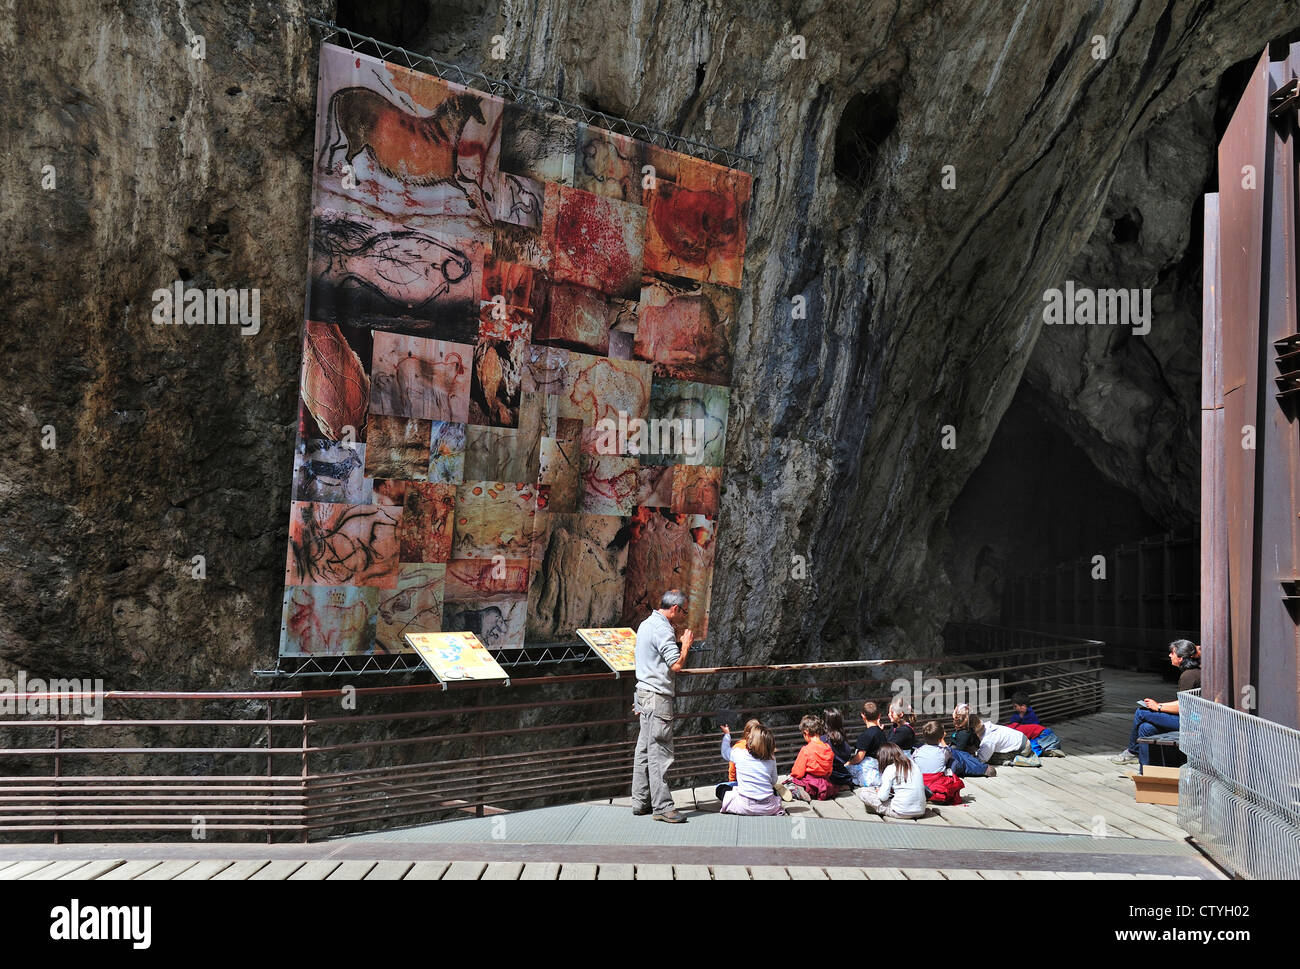 La Grotta di Niaux, famosa per le sue pitture preistoriche dal periodo Magdalenian, Midi-Pirenei, Pirenei, Francia Foto Stock